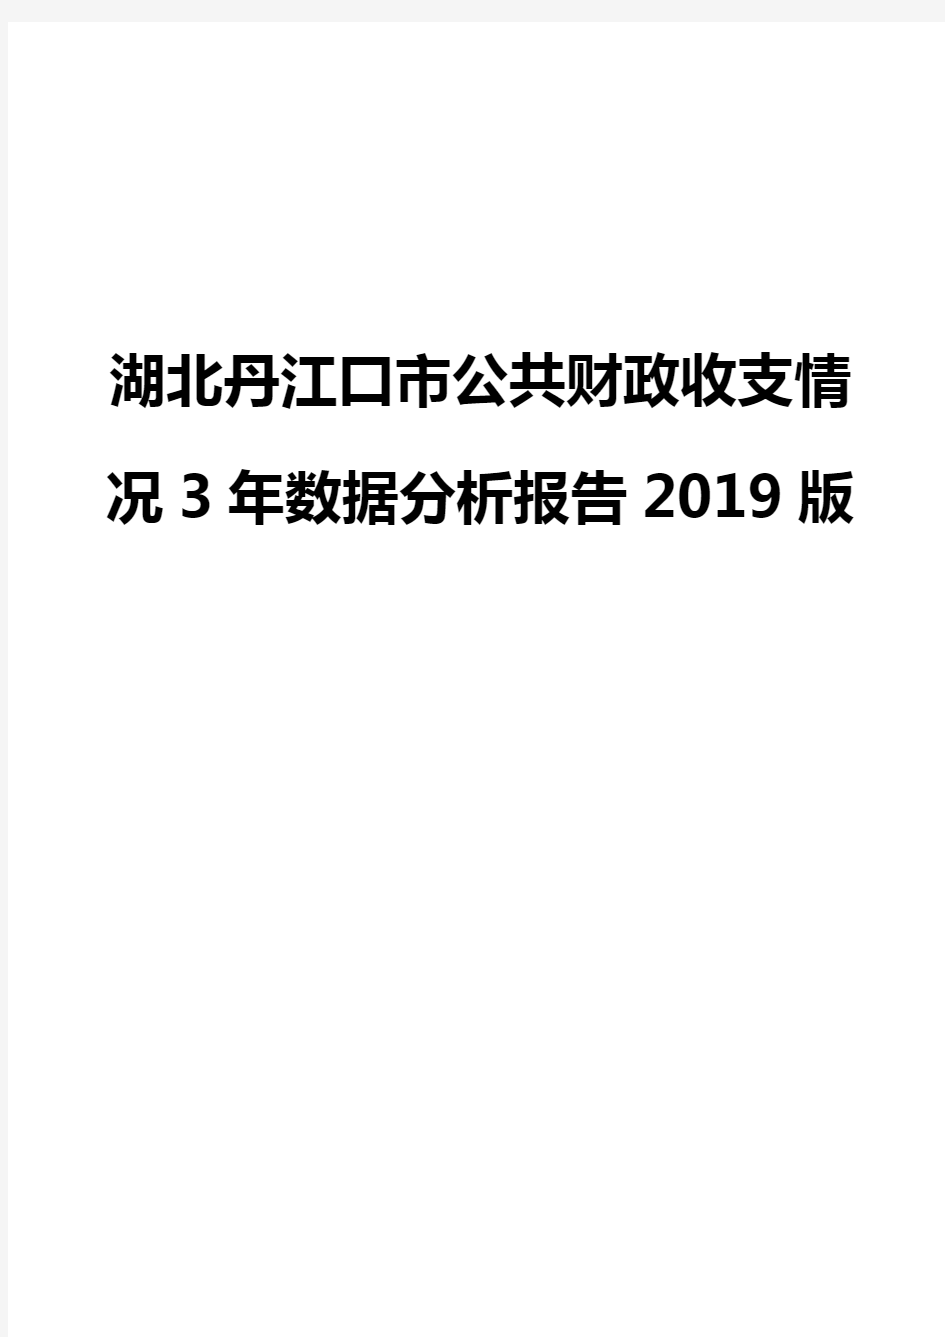 湖北丹江口市公共财政收支情况3年数据分析报告2019版